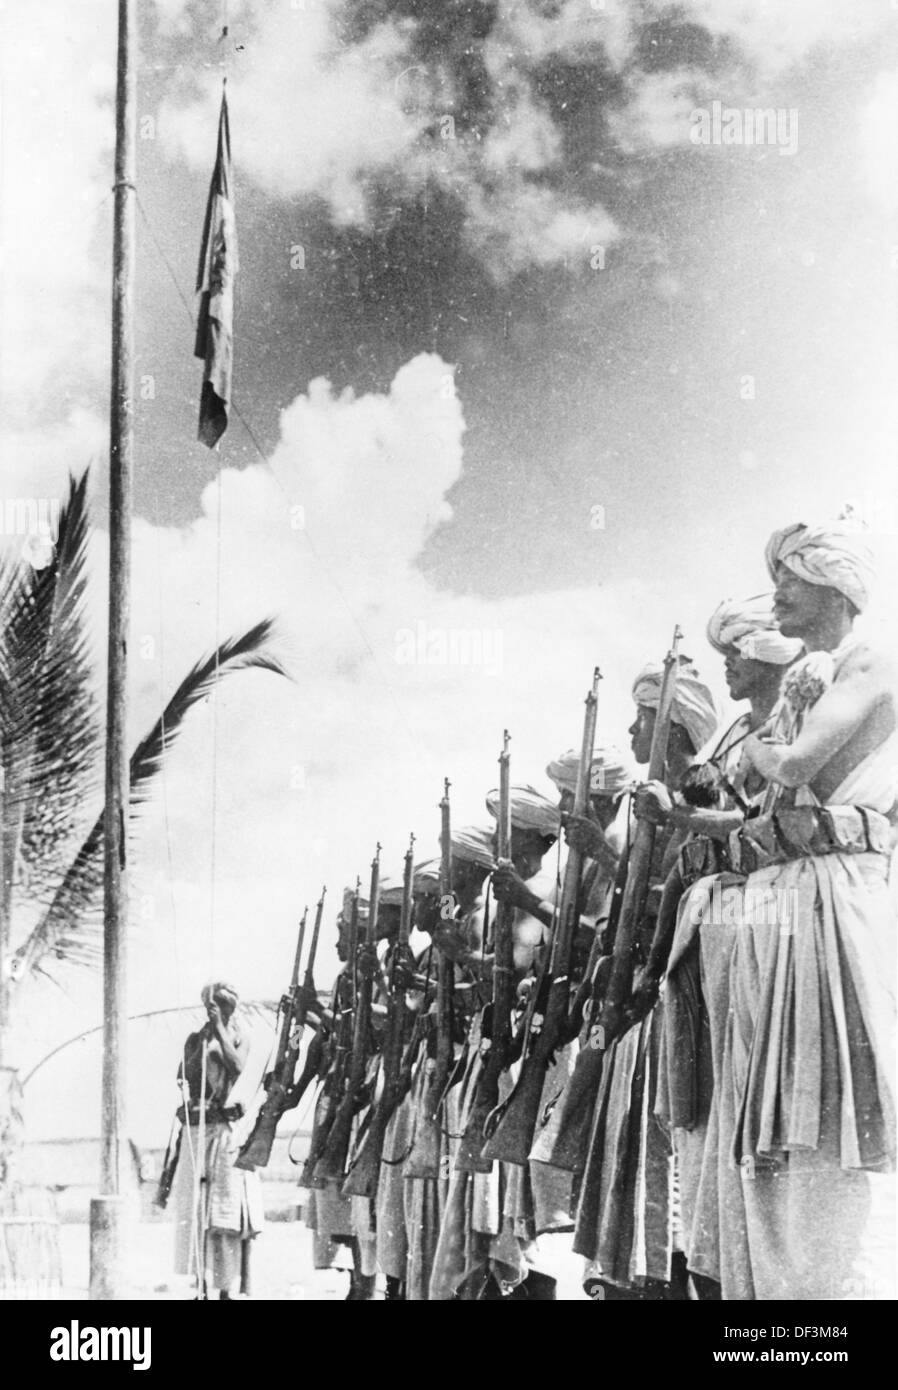 Das Bild der Nazi-Propaganda! Zeigt koloniale Soldaten der italienischen Truppen - so genannte "Dubats" - während einer Flaggenparade in Nordafrika, die am 2. Januar 1941 veröffentlicht wurde. Ort unbekannt. Fotoarchiv für Zeitgeschichte Stockfoto